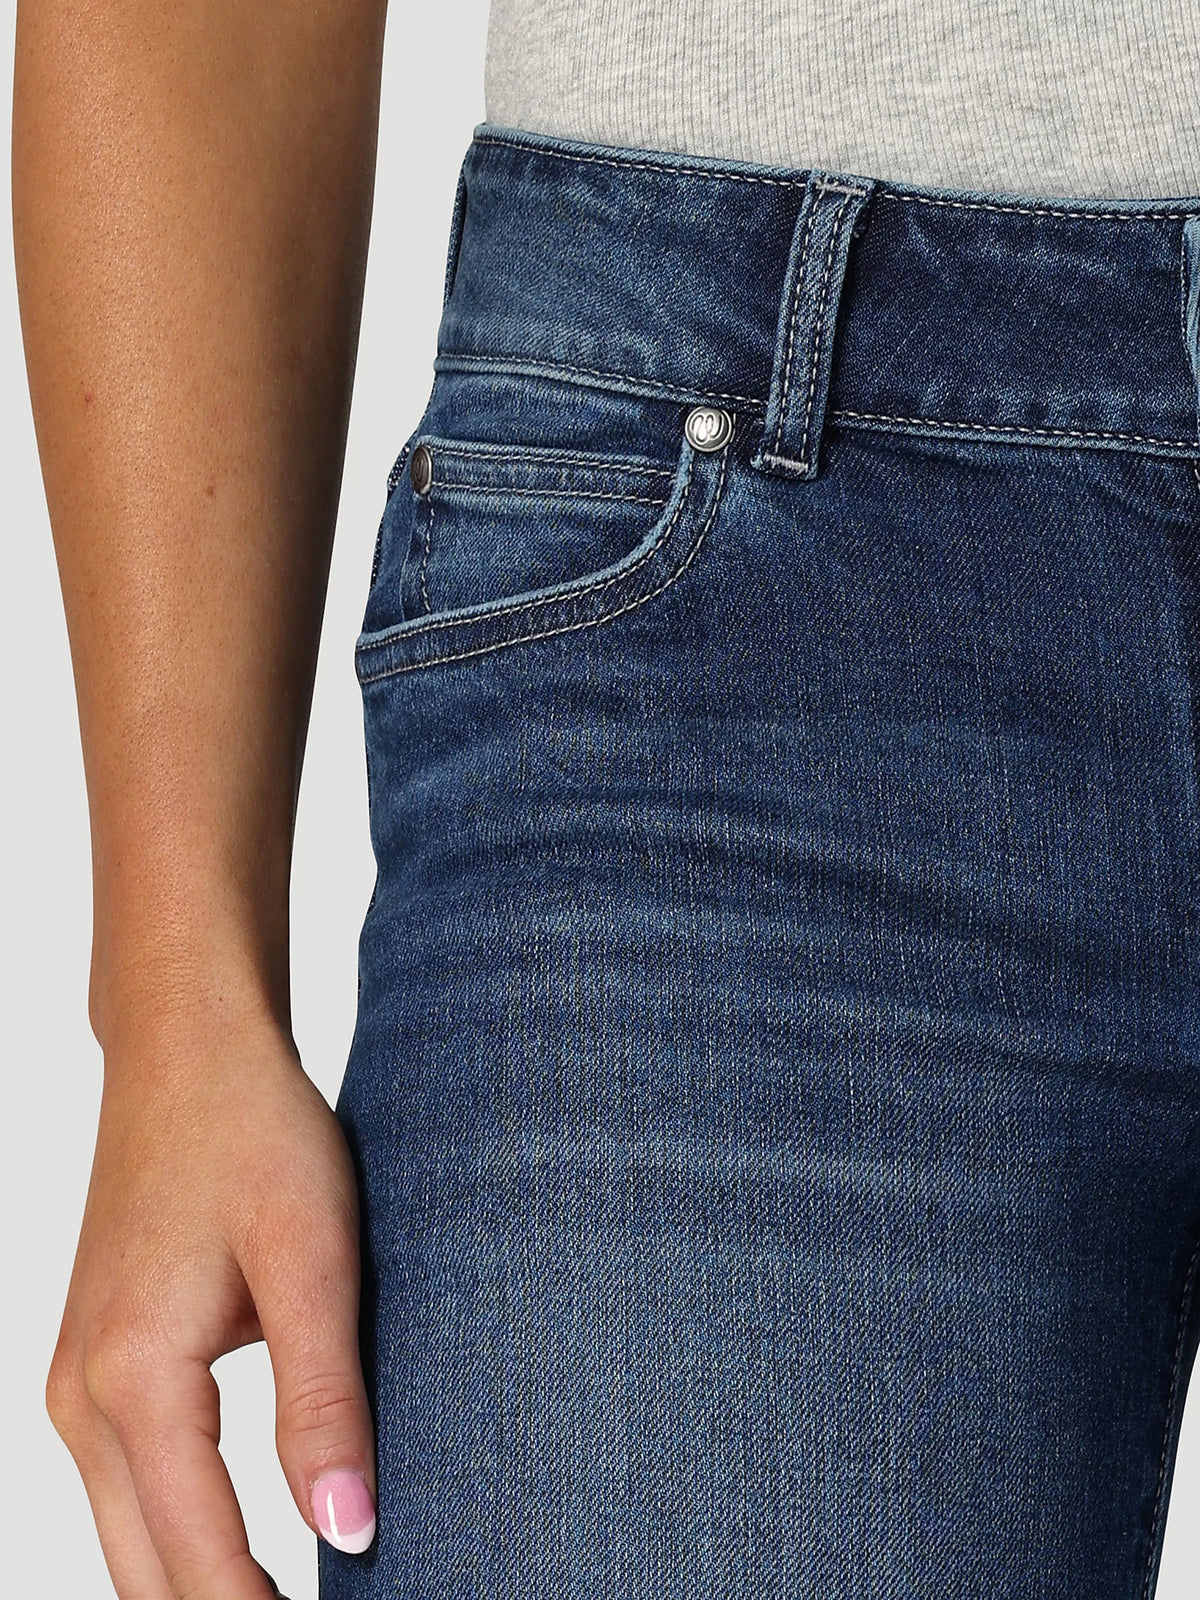 The Shelby Women's Wrangler Retro High Rise Trouser Jean – Be True